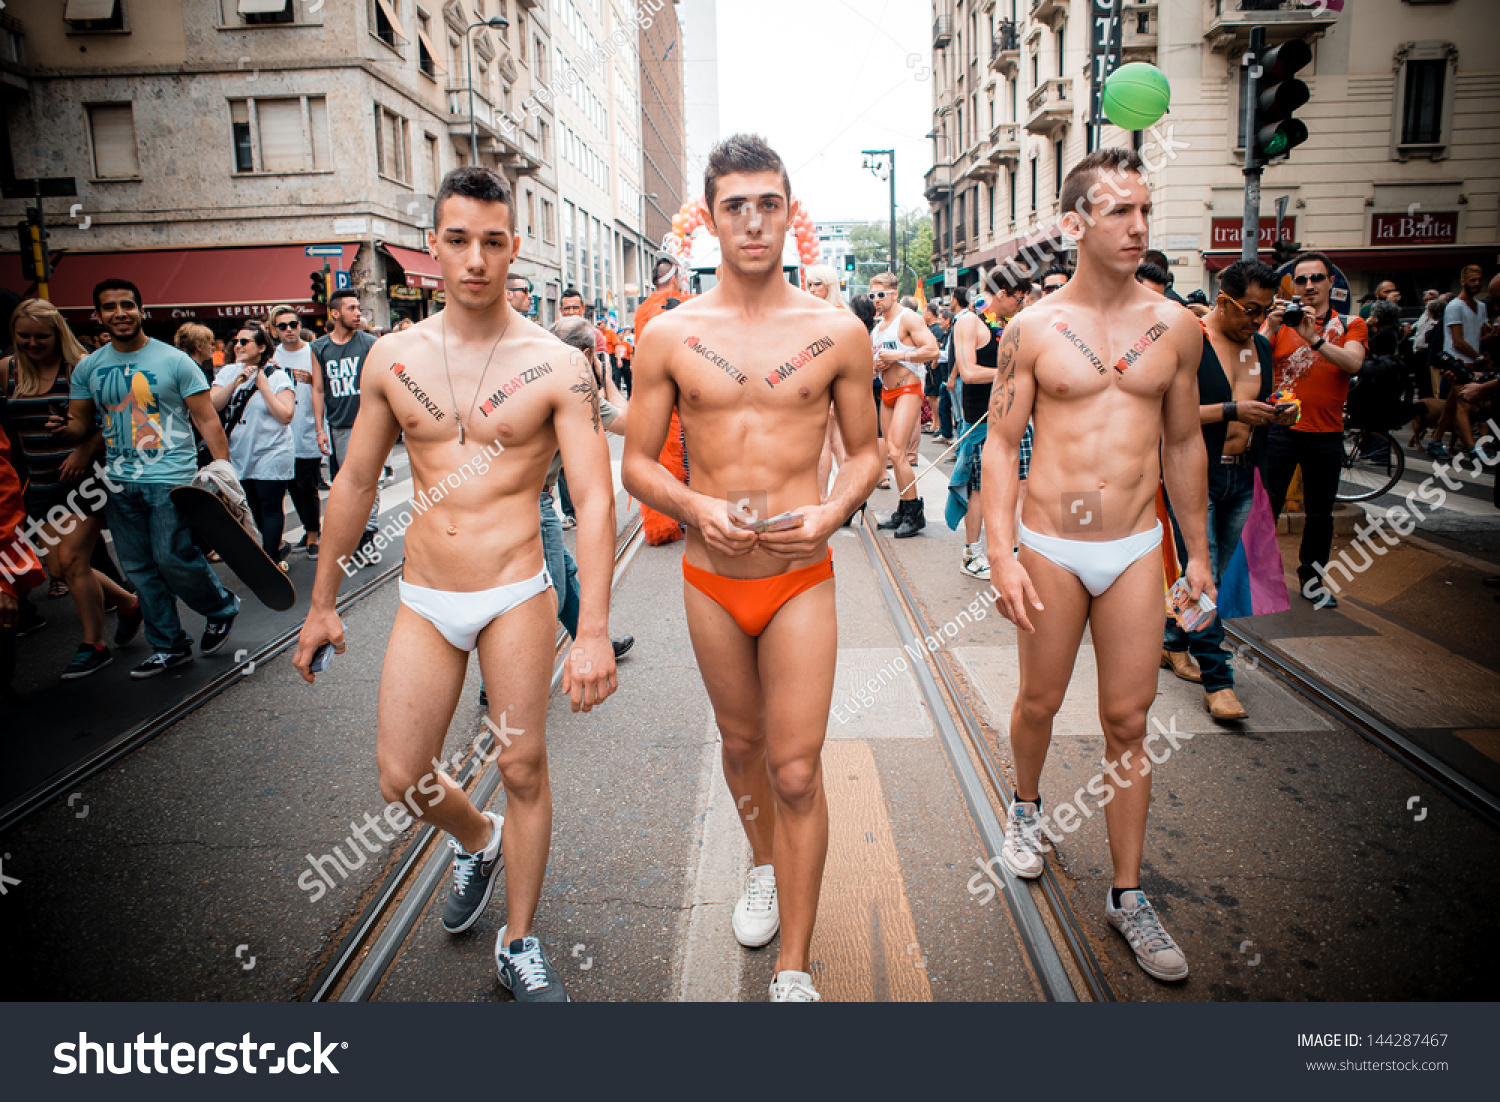 Italian Gay Pride 117